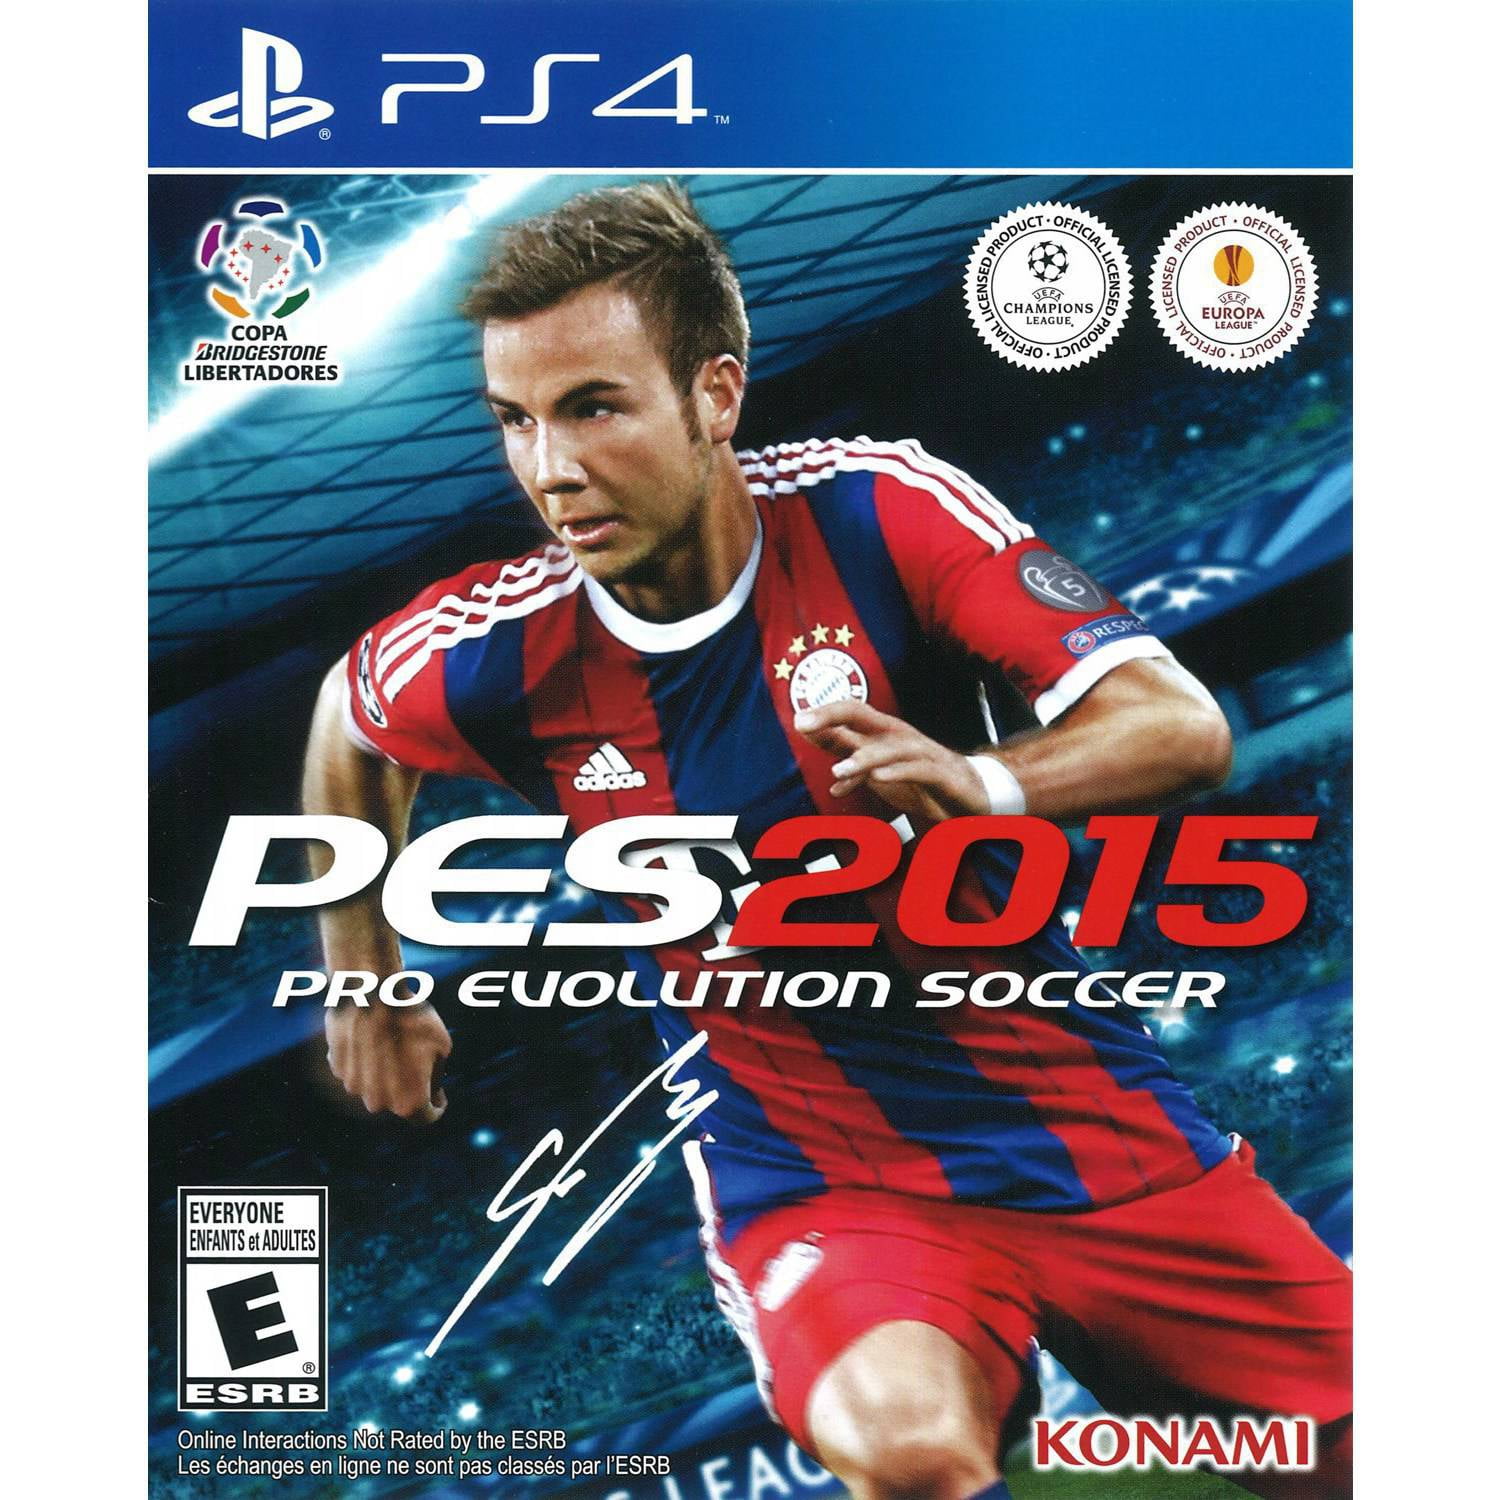 Fern omgive Hobart Pro Evolution Soccer 2015, Konami, Playstation 4, 00083717202974 -  Walmart.com